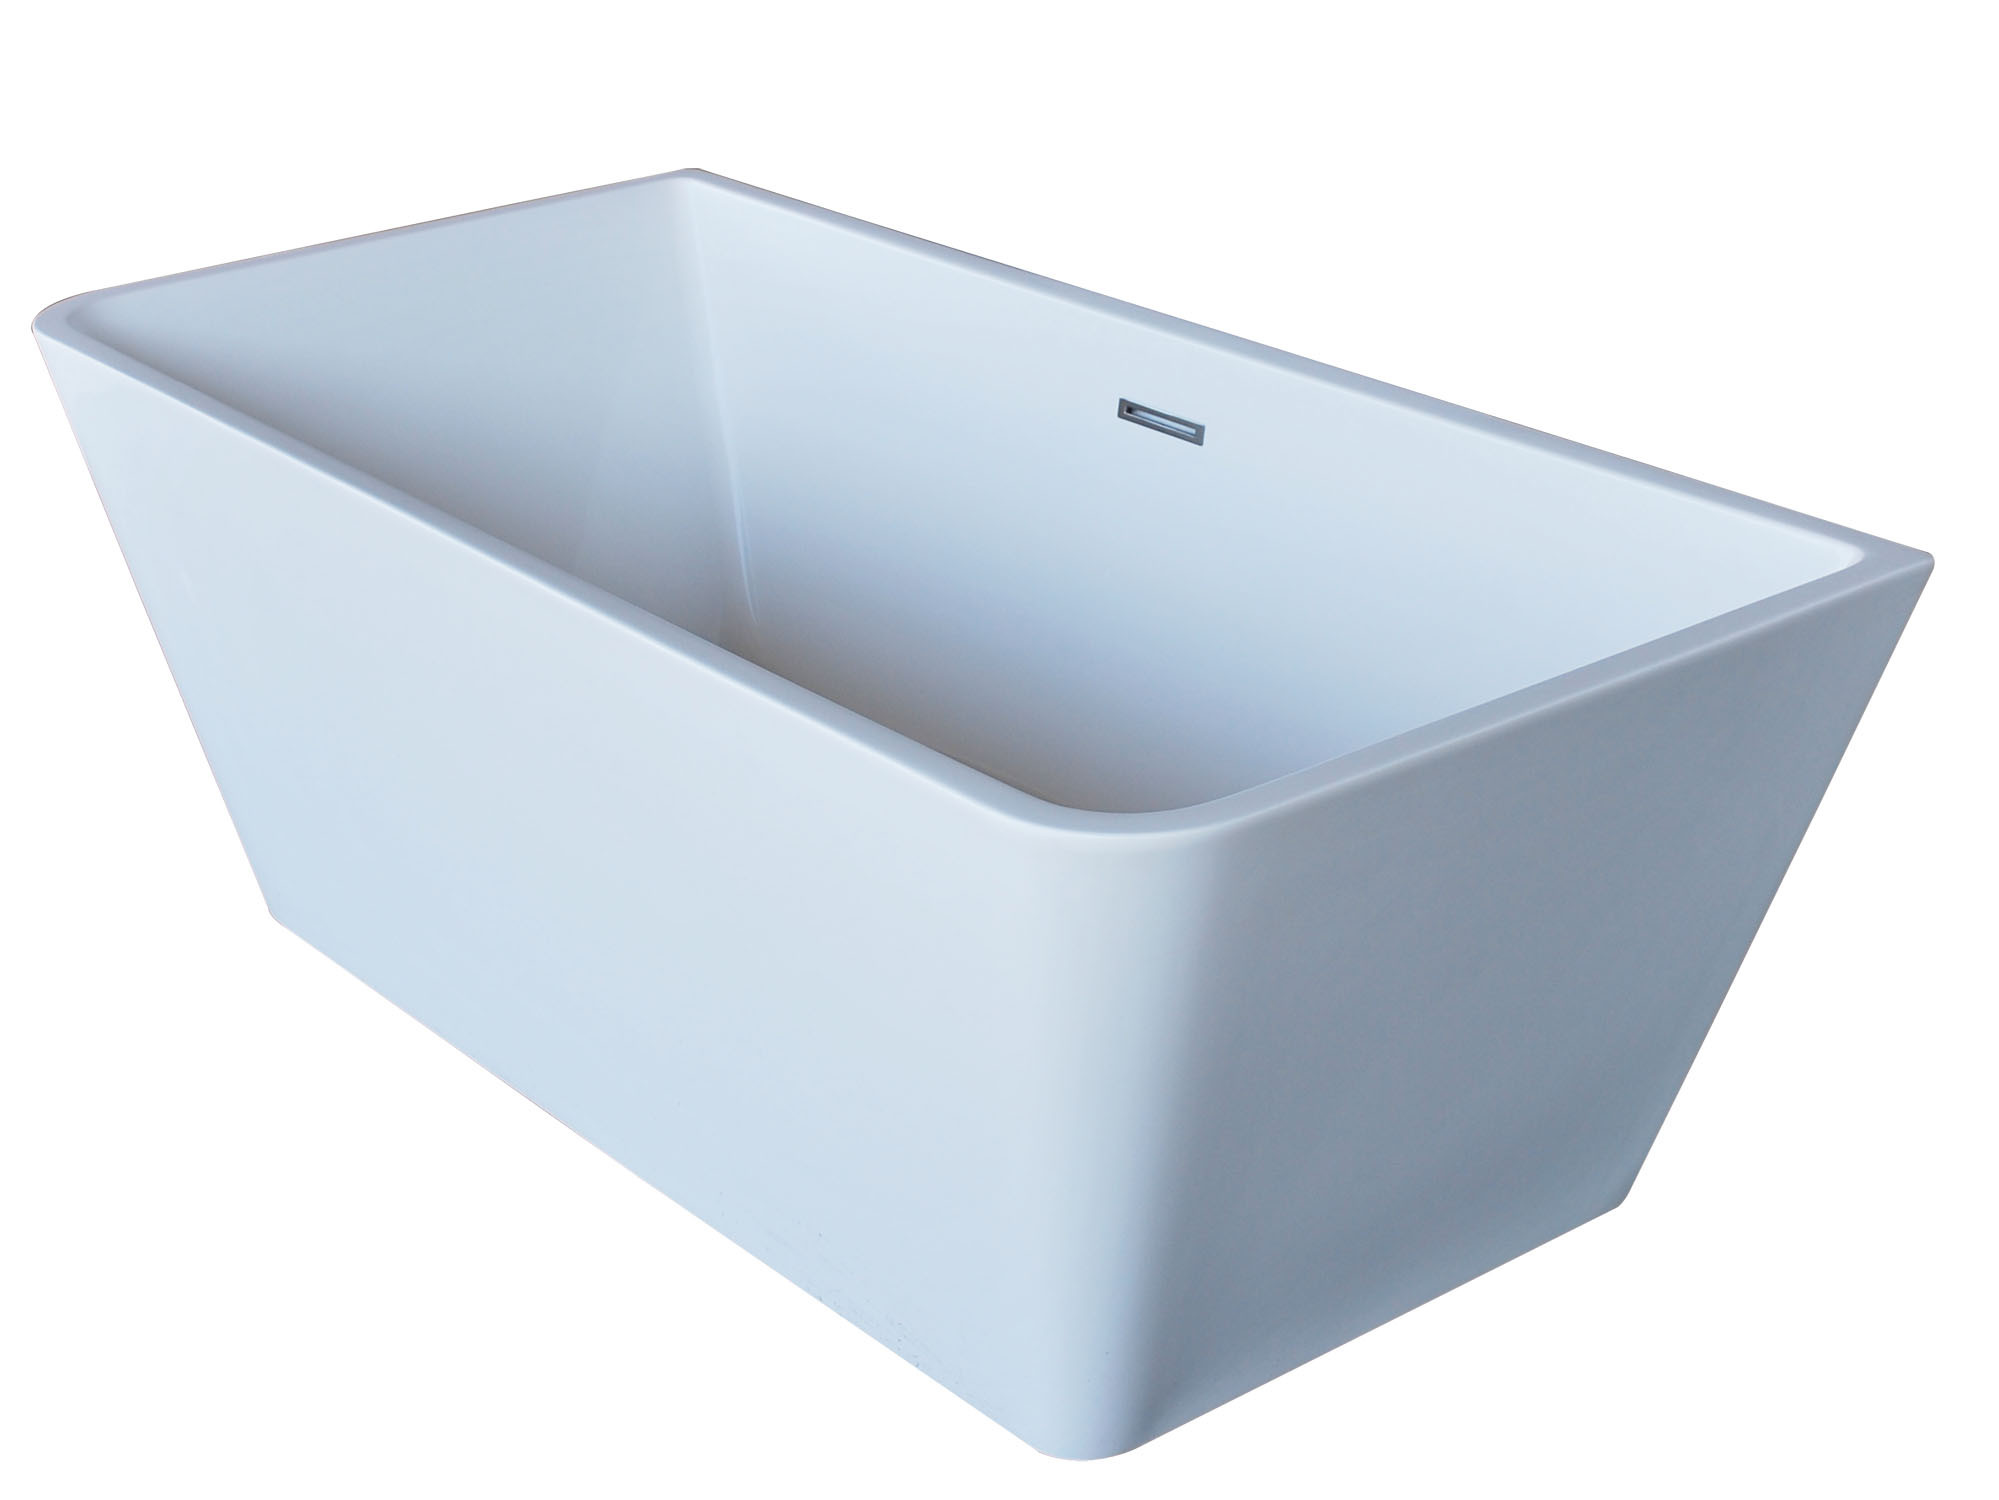 Anzzi FT-AZ005 Majanel Center Drain Freestanding Bathtub In Glossy White